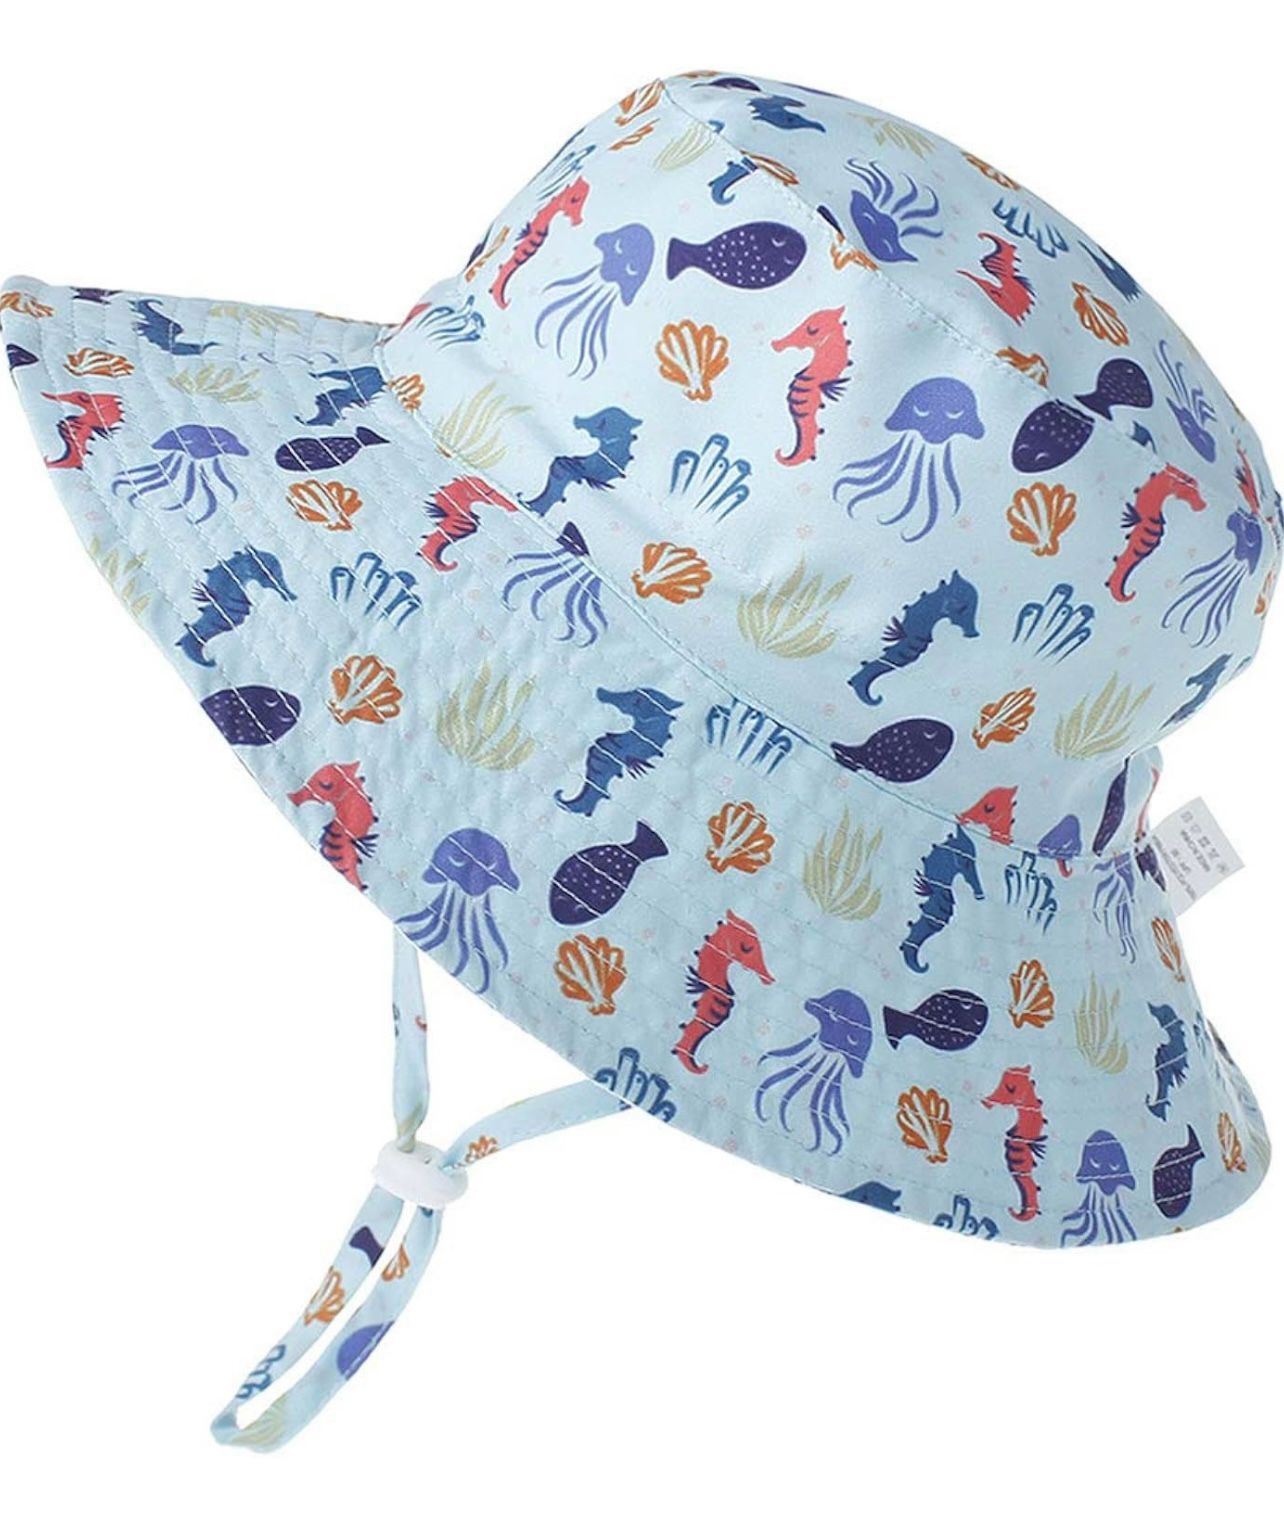 Sombrero con protección solar de animales del mar, talla 1 año